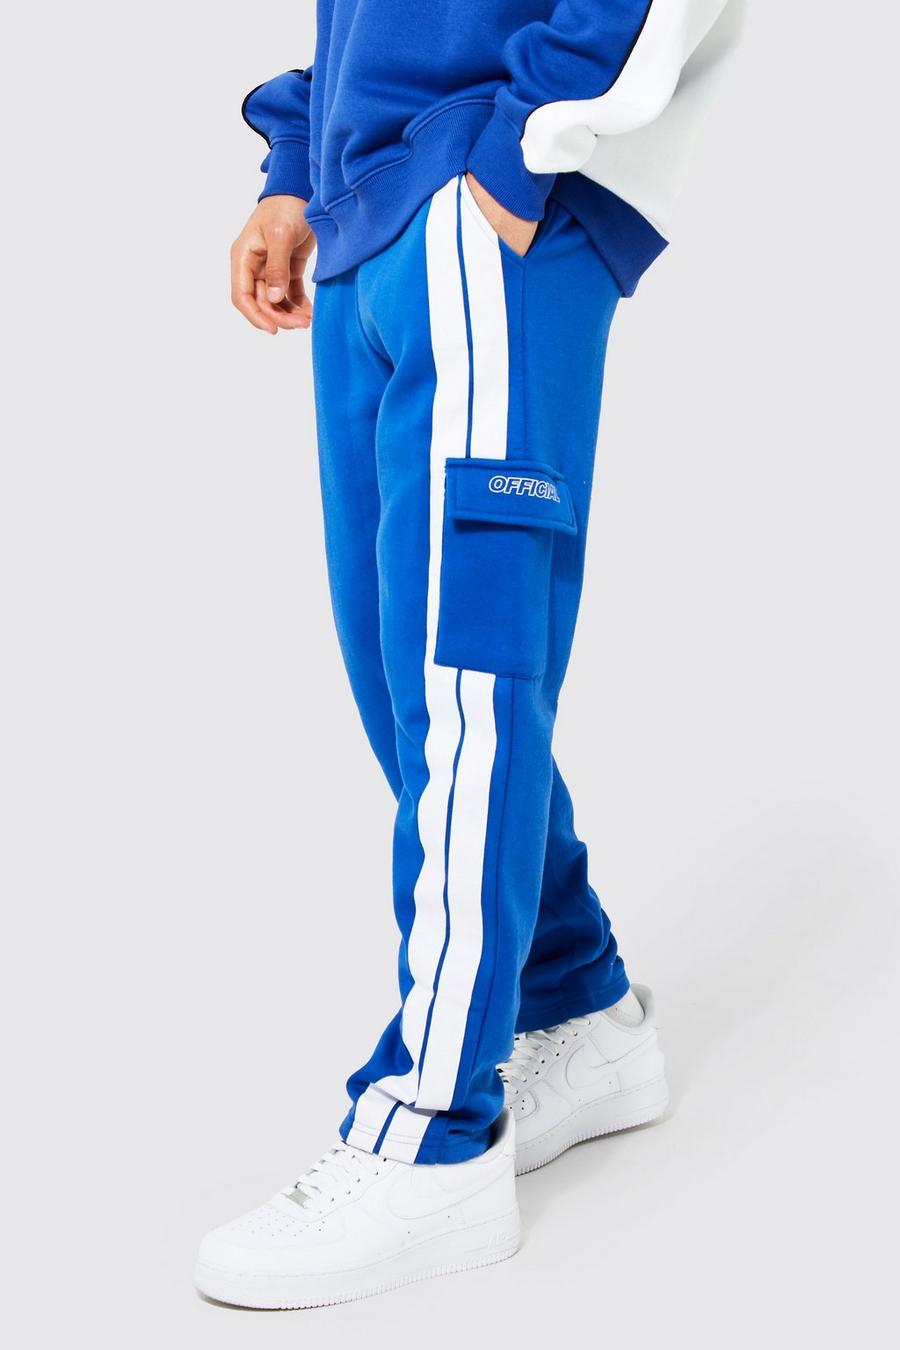 Pantalón deportivo ajustado cargo con cinta Official, Blue azul